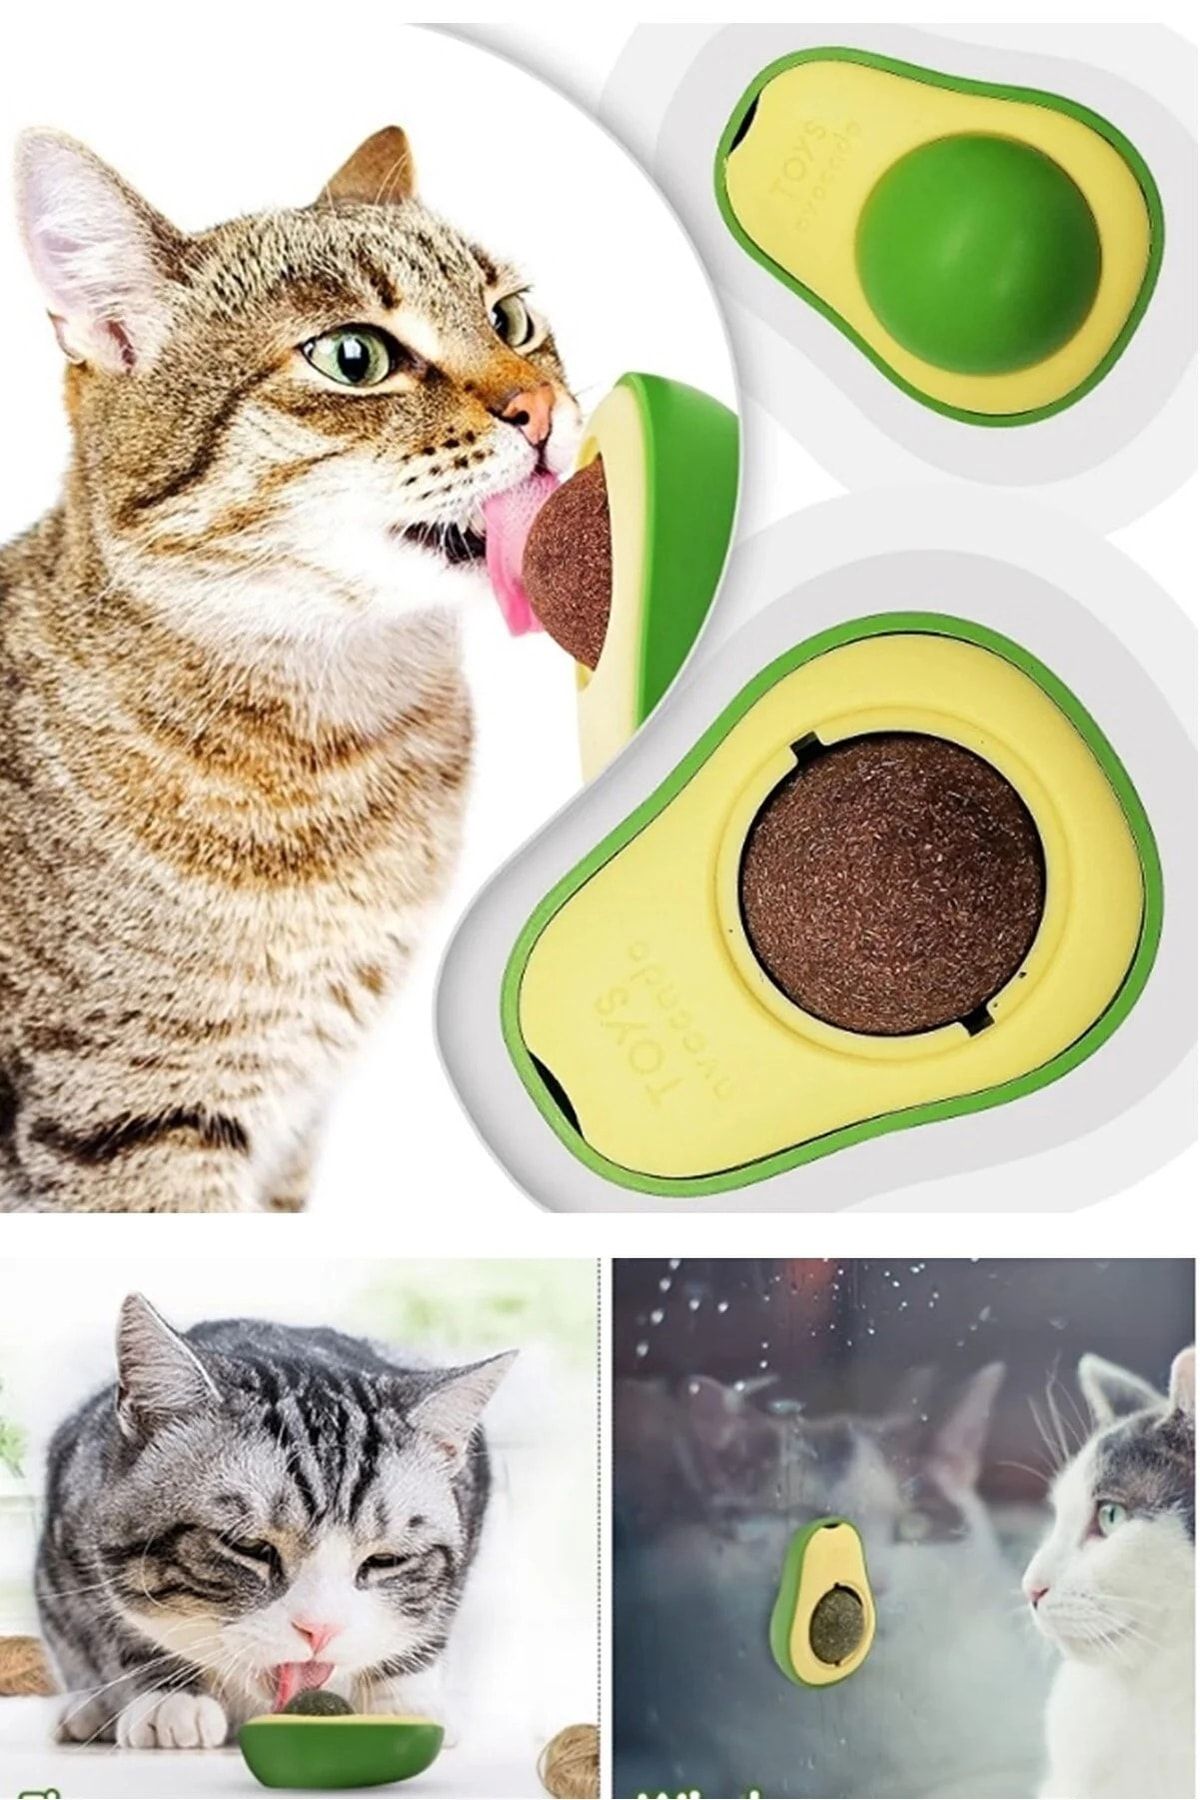 Vi Caro Kedi Yalama Topu Avokado Şeklinde Catnip Otlu Interaktif 360 Derece Dönen Oyun Ve Yalama Topu Evcil